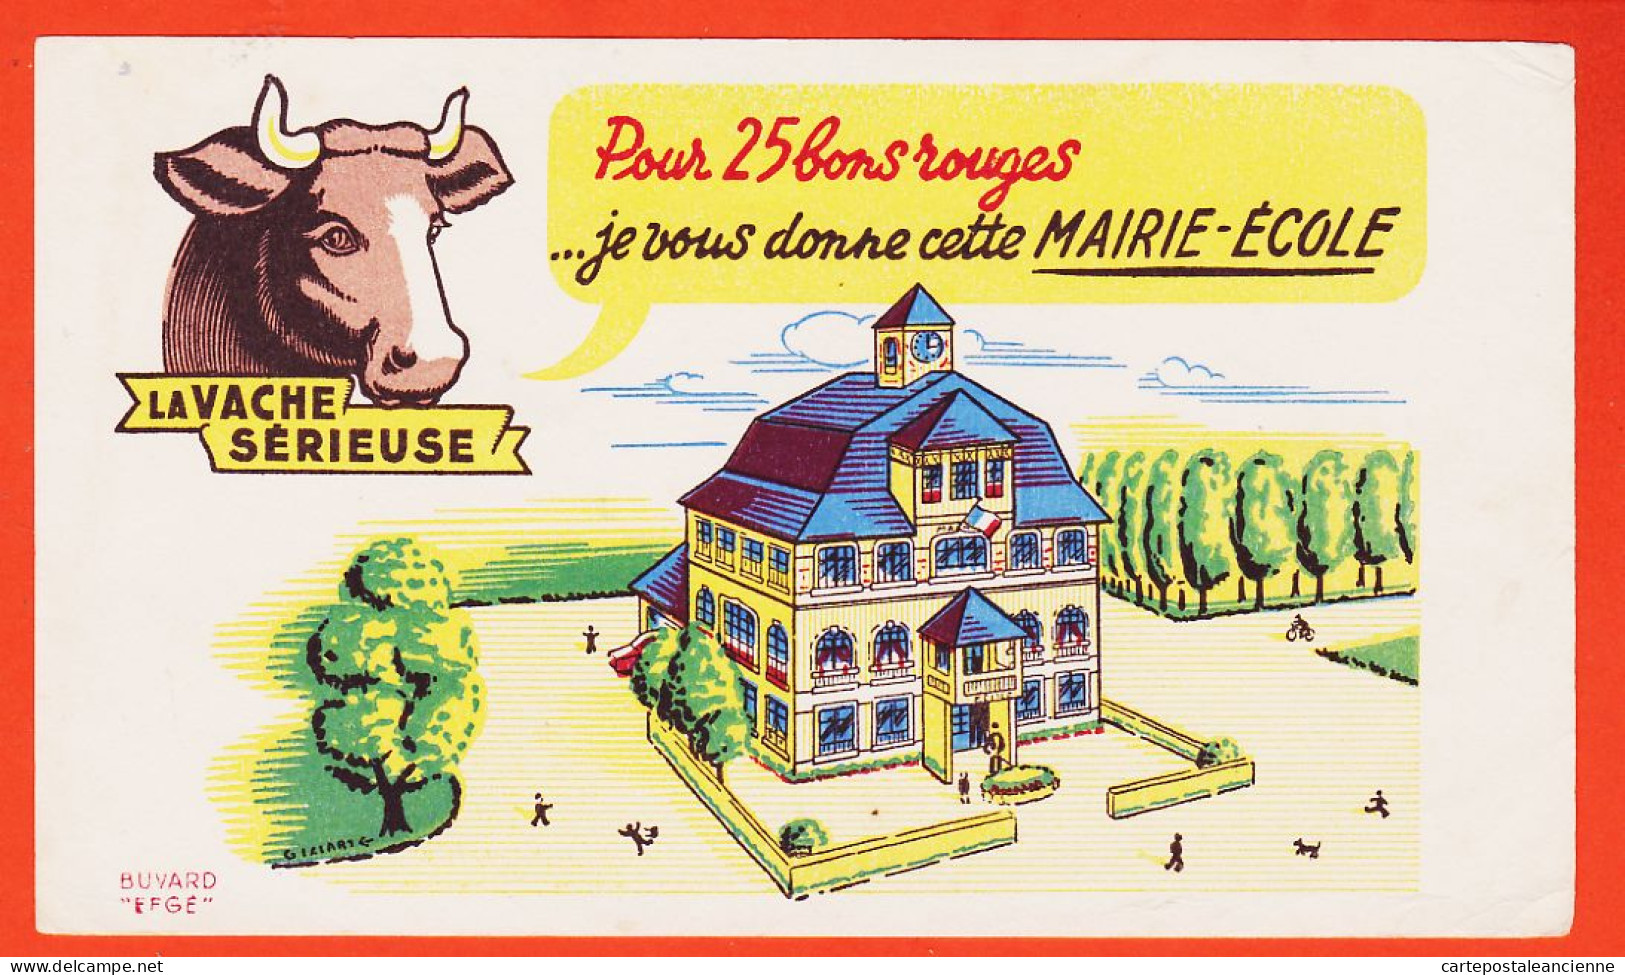 06170 / LA VACHE SERIEUSE Crème Double Crème De Gruyère Pour 30 Bons Cette Superbe Eglise / Buvard EFGE 1950s Cppub - Alimentaire